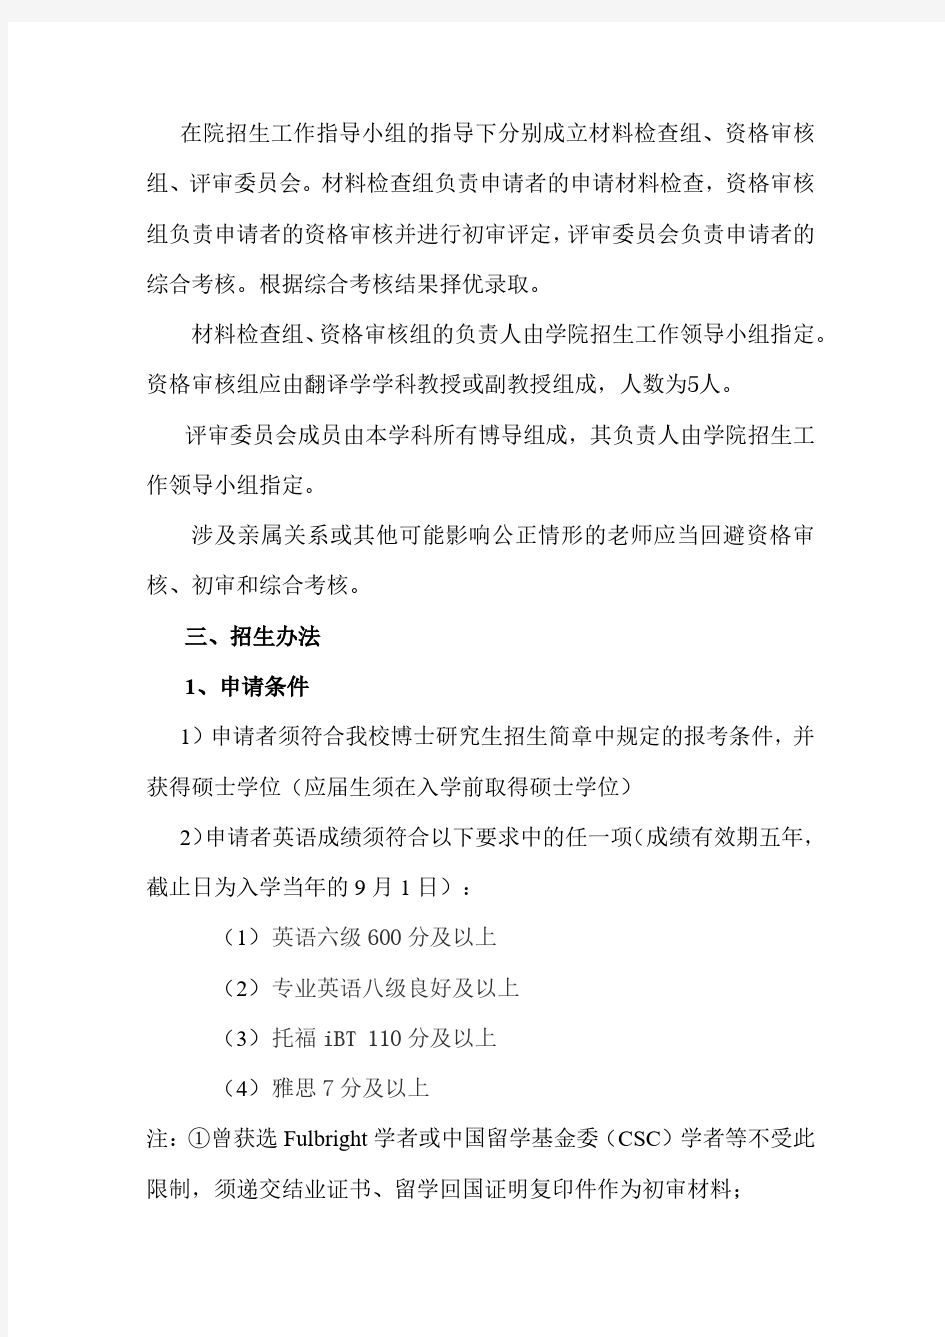 上海外国语大学高级翻译学院博士研究生申请考核制2020